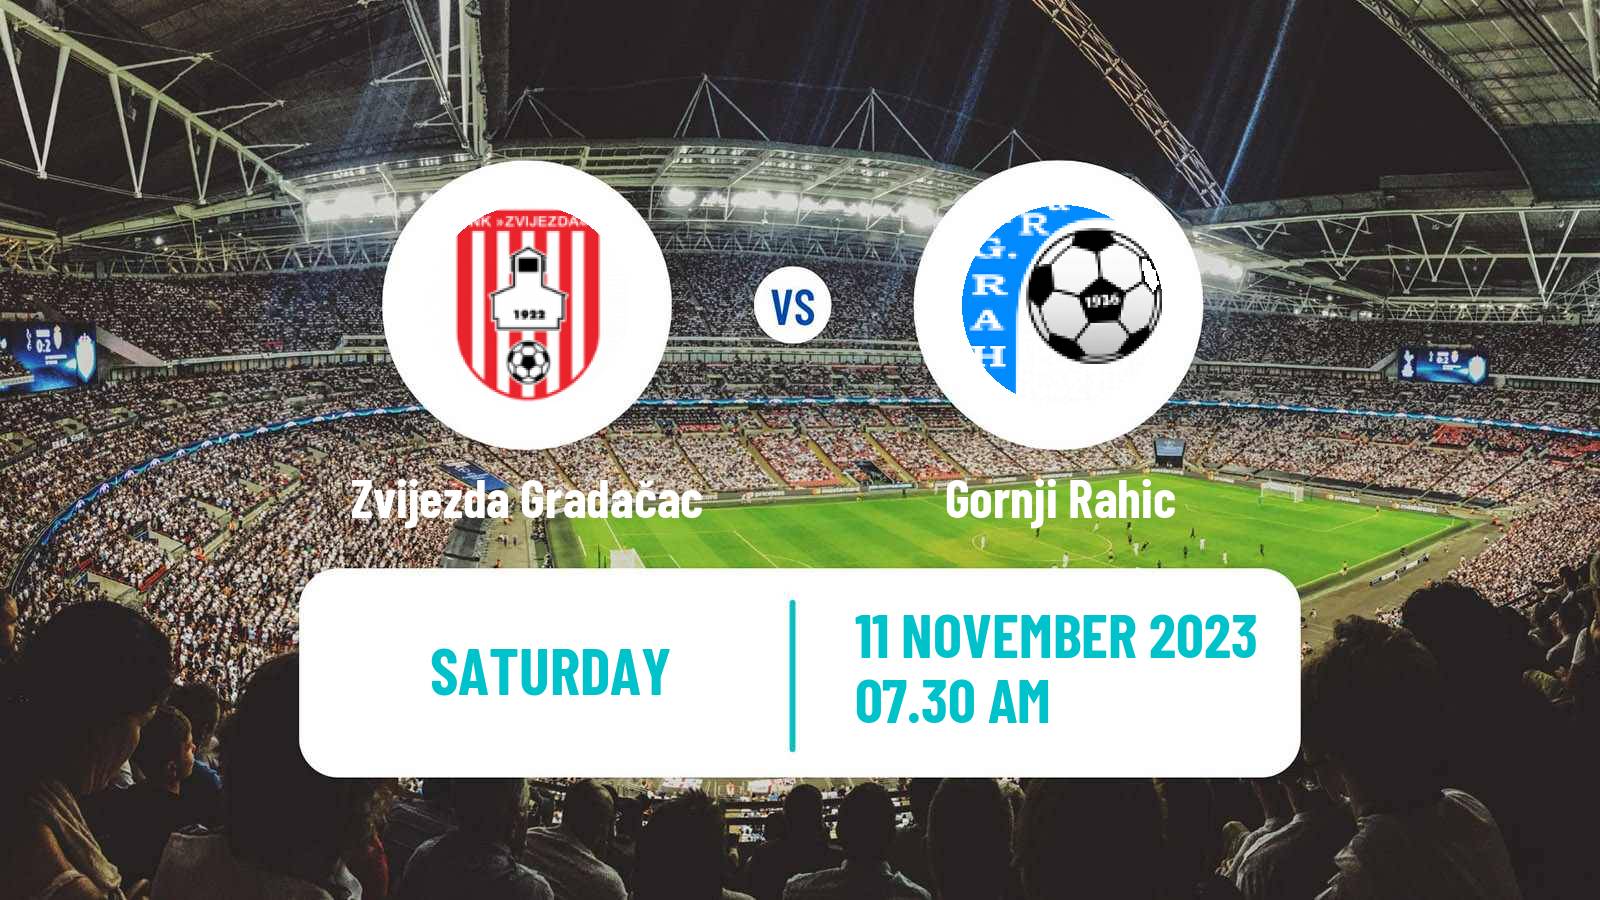 Soccer Bosnian Prva Liga FBiH Zvijezda Gradačac - Gornji Rahic